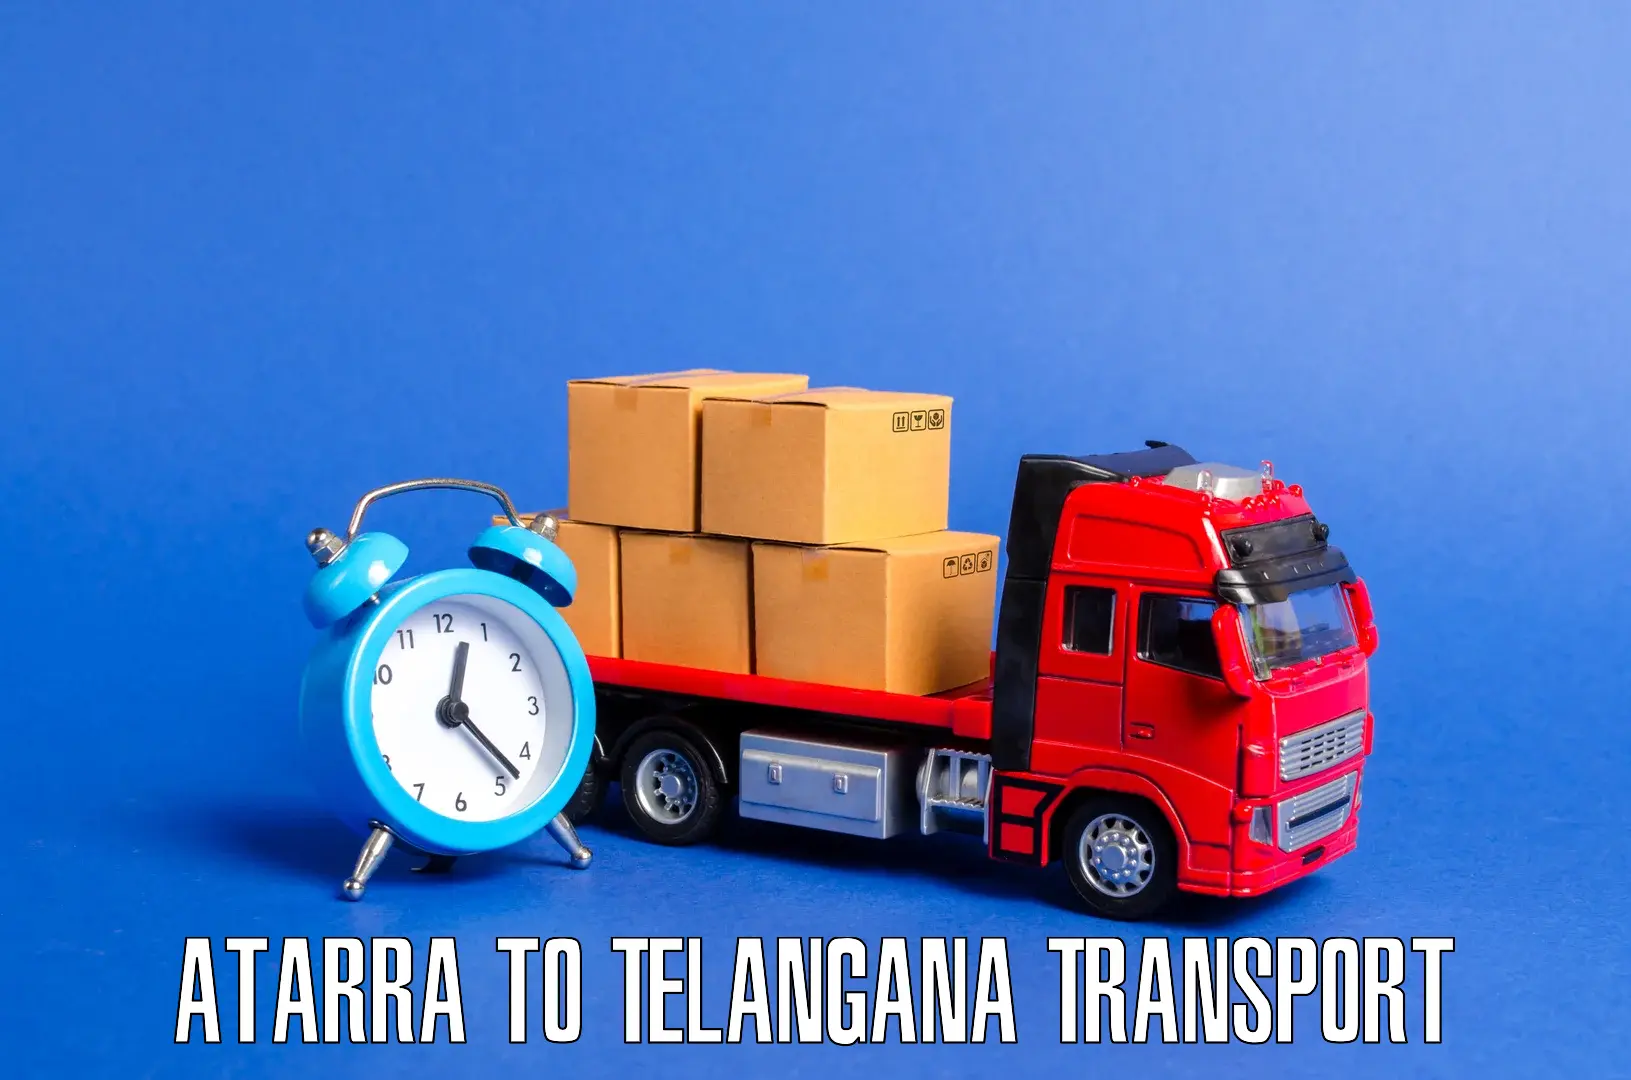 Transportation solution services Atarra to Mudigonda